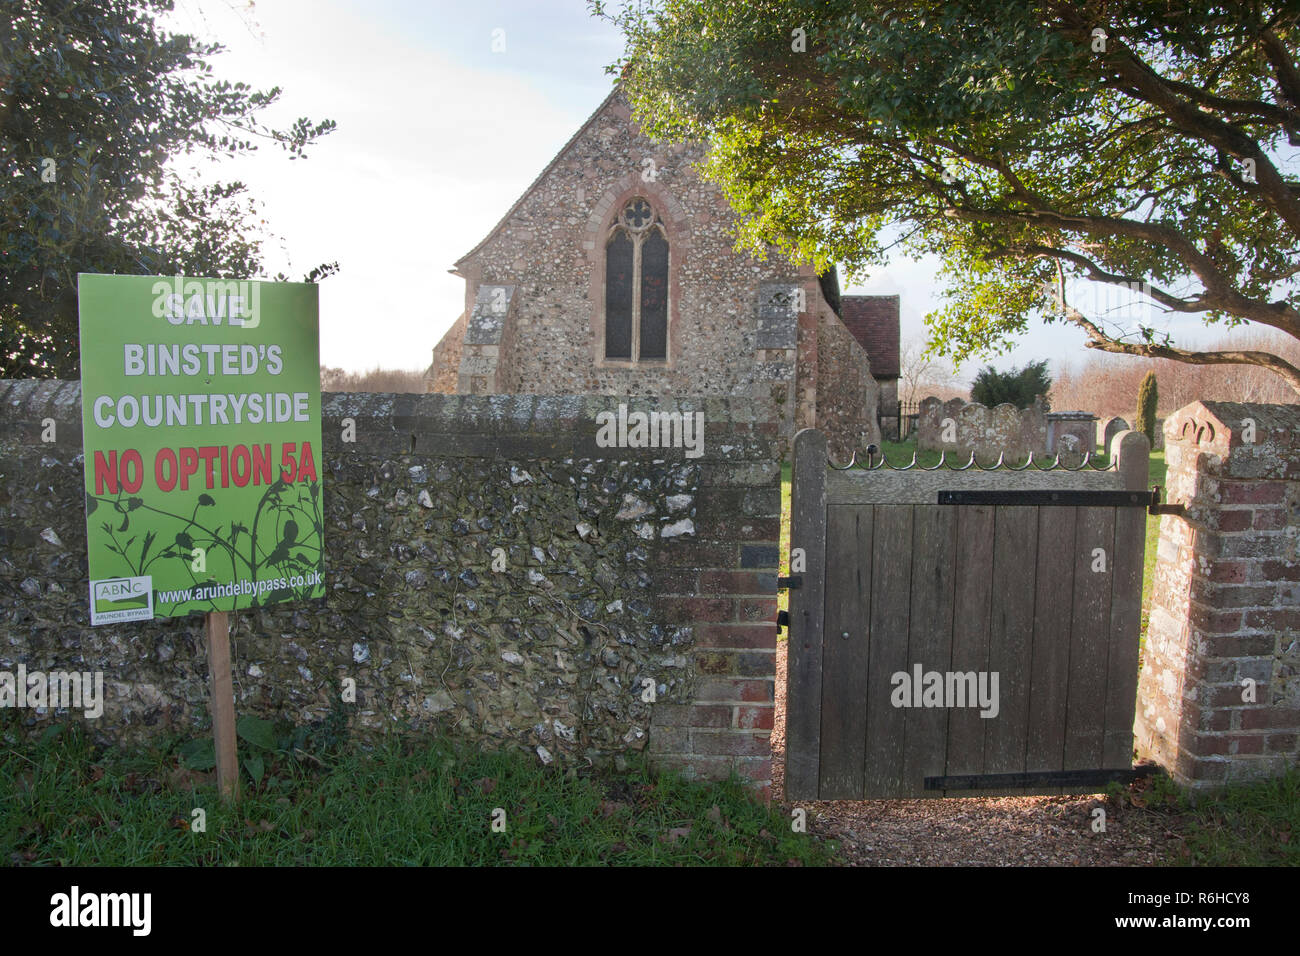 Pas d'option 5A protester affiche à l'extérieur de l'église de la Vierge Marie s'opposant à la nouvelle dérivation Binsted, Arundel, Sussex de l'Ouest. Binsted est un village riche en folklore Banque D'Images